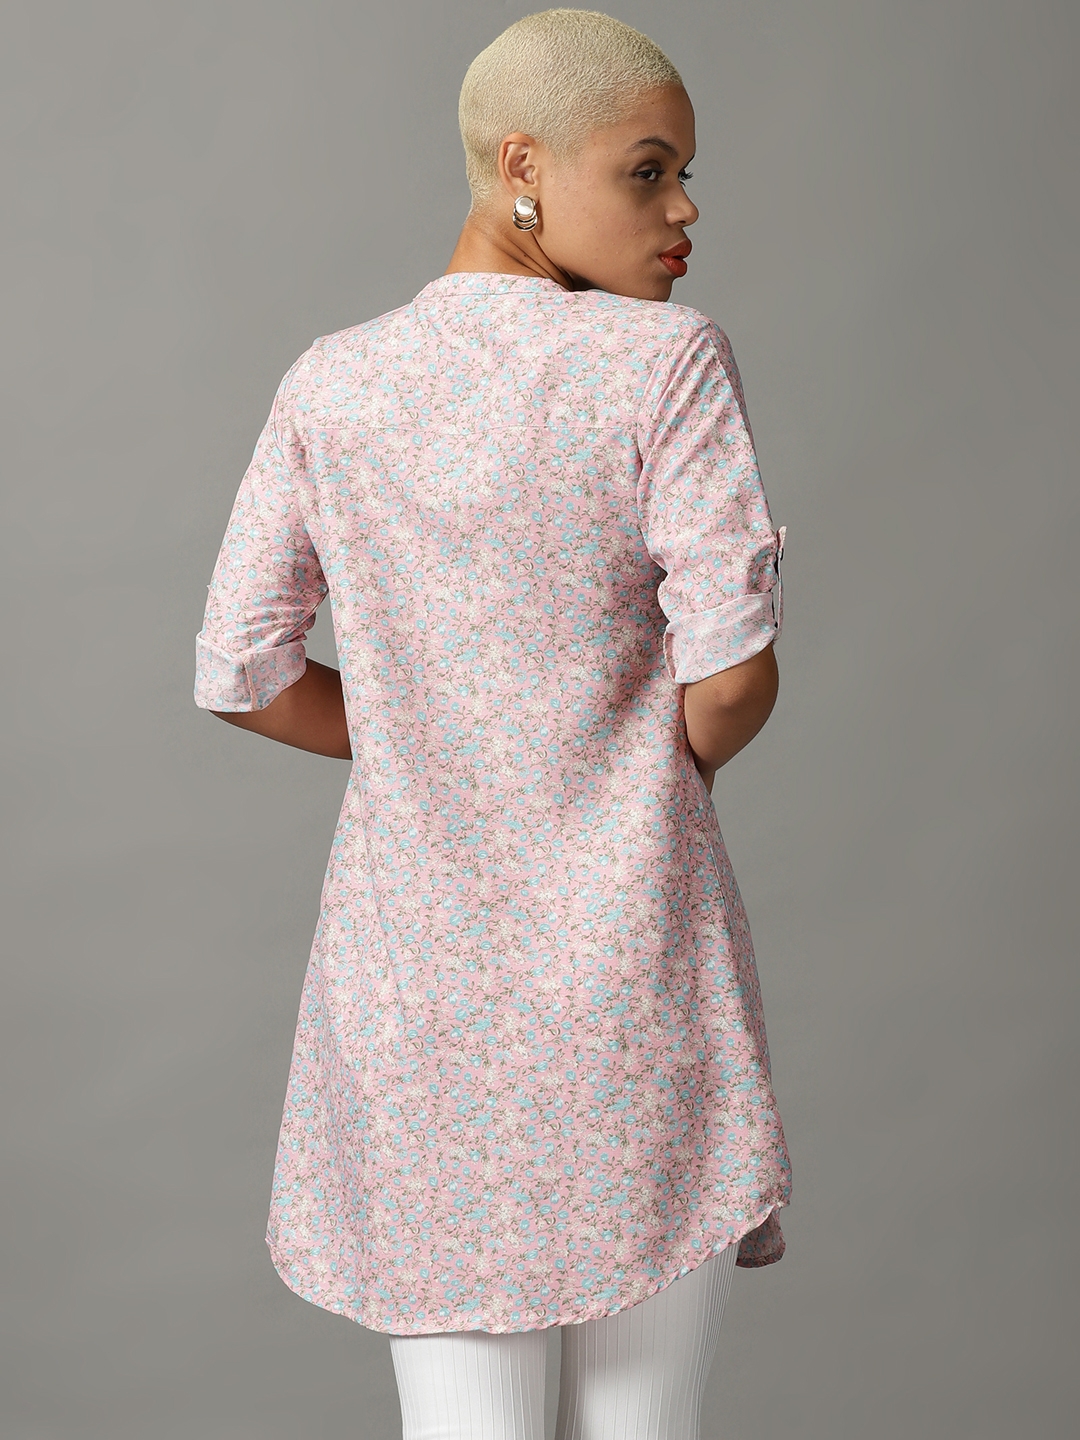 Showoff | SHOWOFF Women Pink Printed Mandarin Collar Three-Quarter Sleeves Long Casual Shirt 3